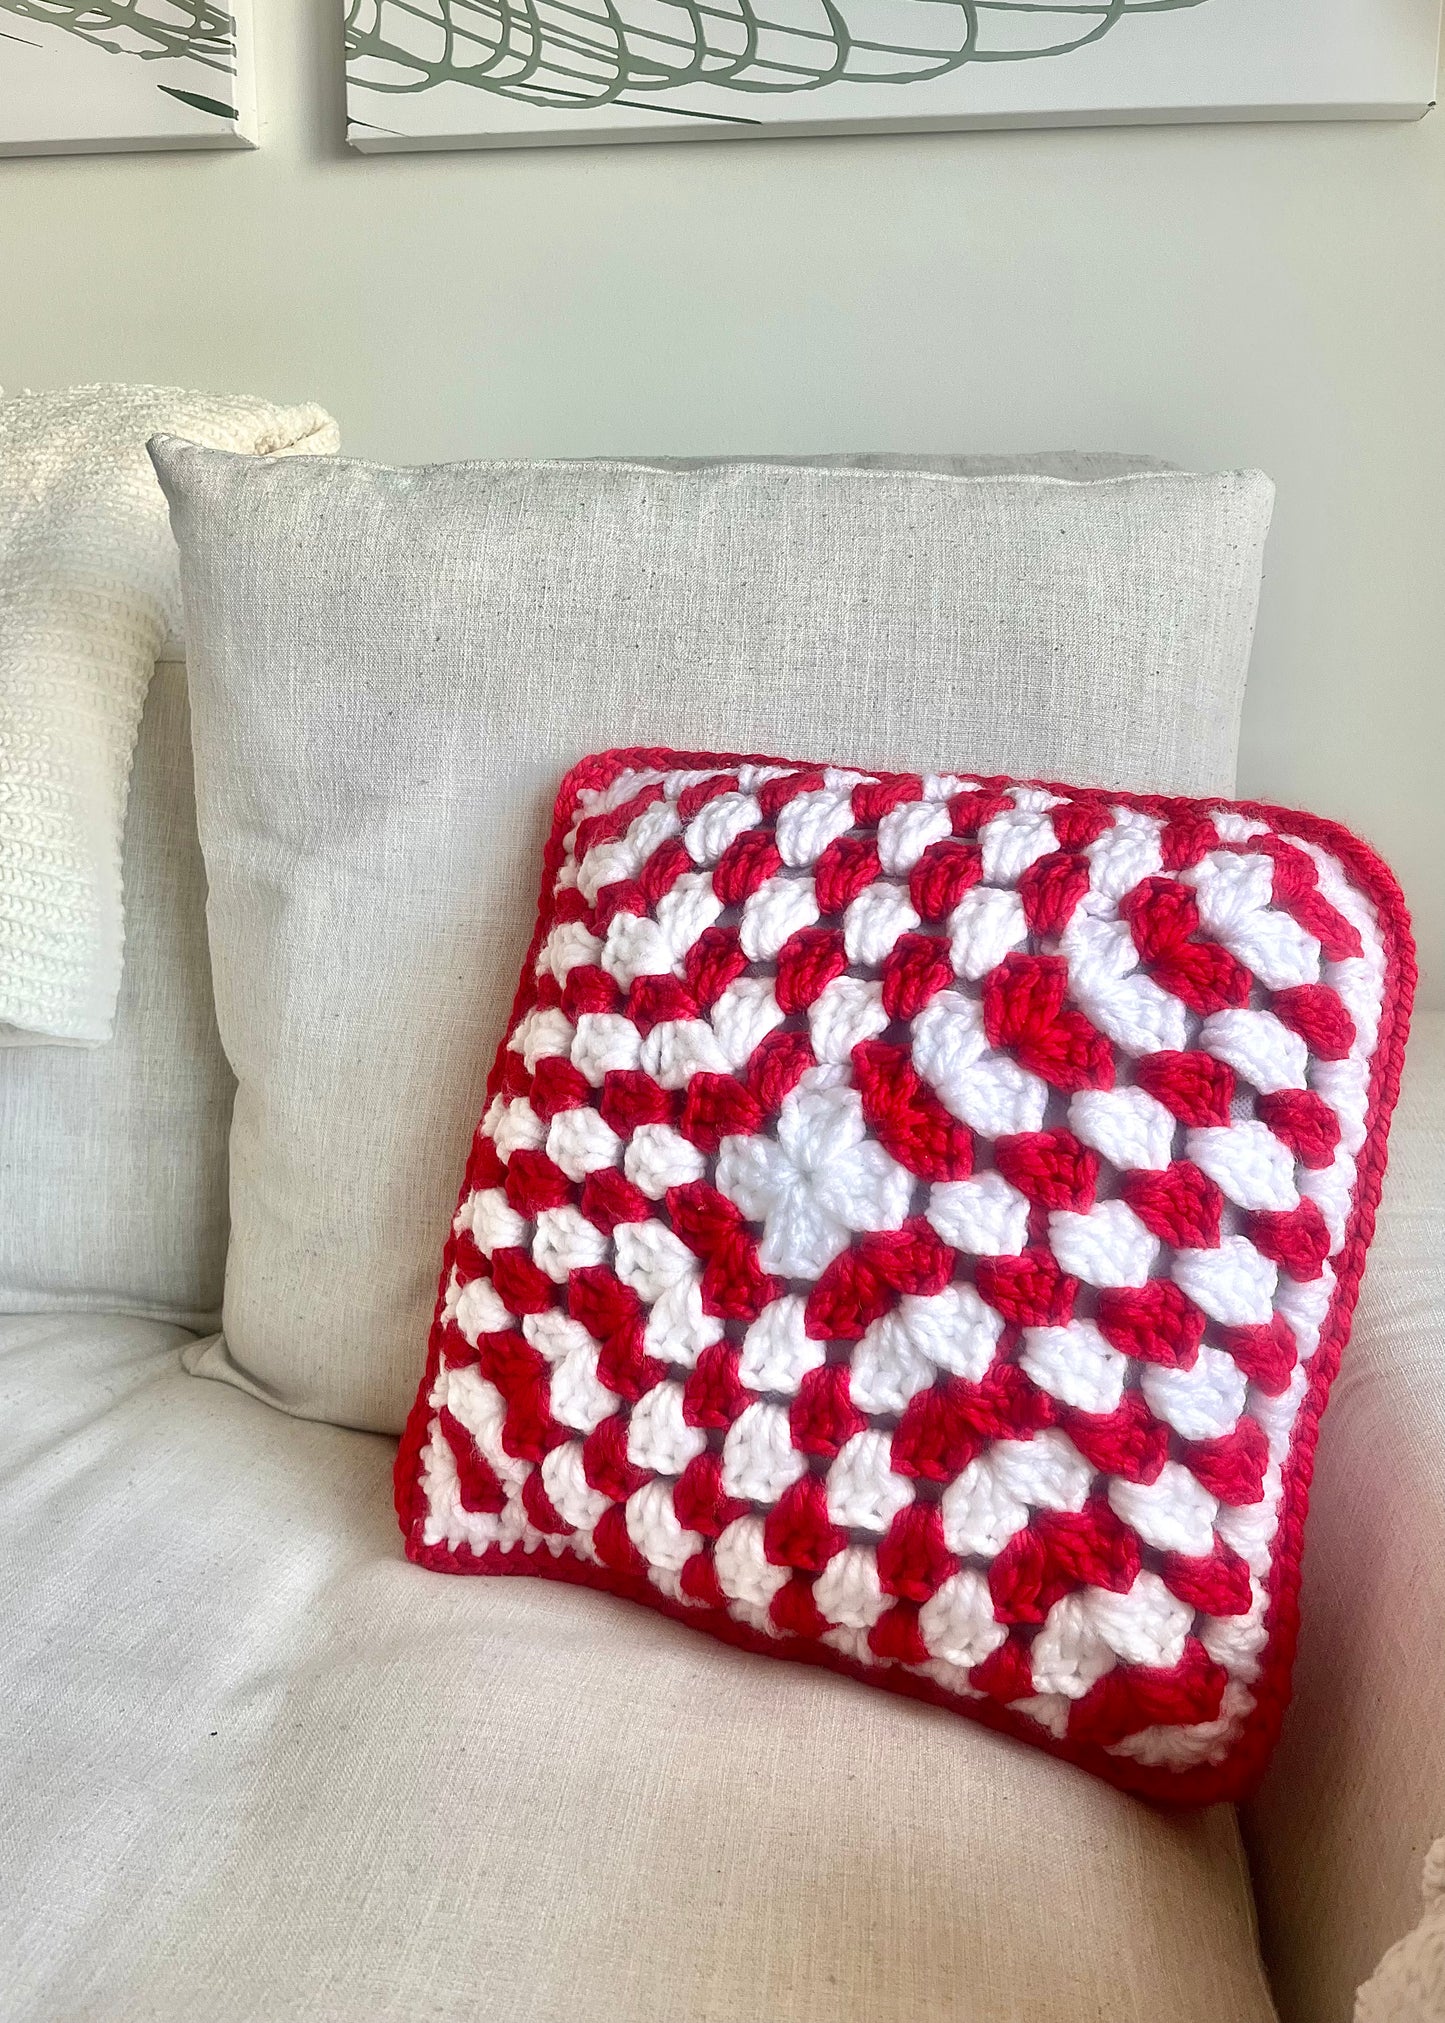 Candy Cane Throw Pillow Crochet Pattern